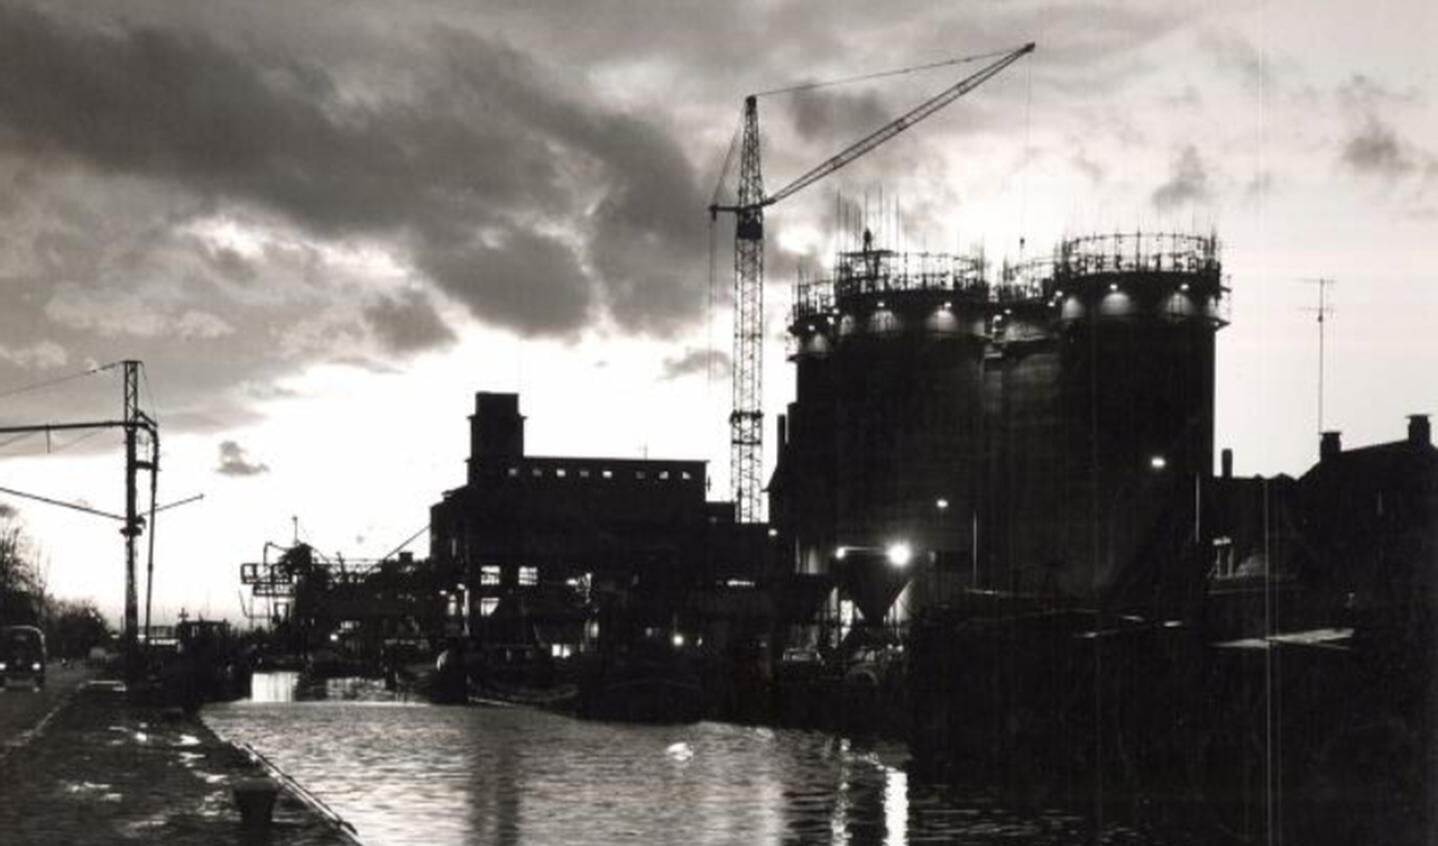 De haven met silo's in aanbouw in 1963.